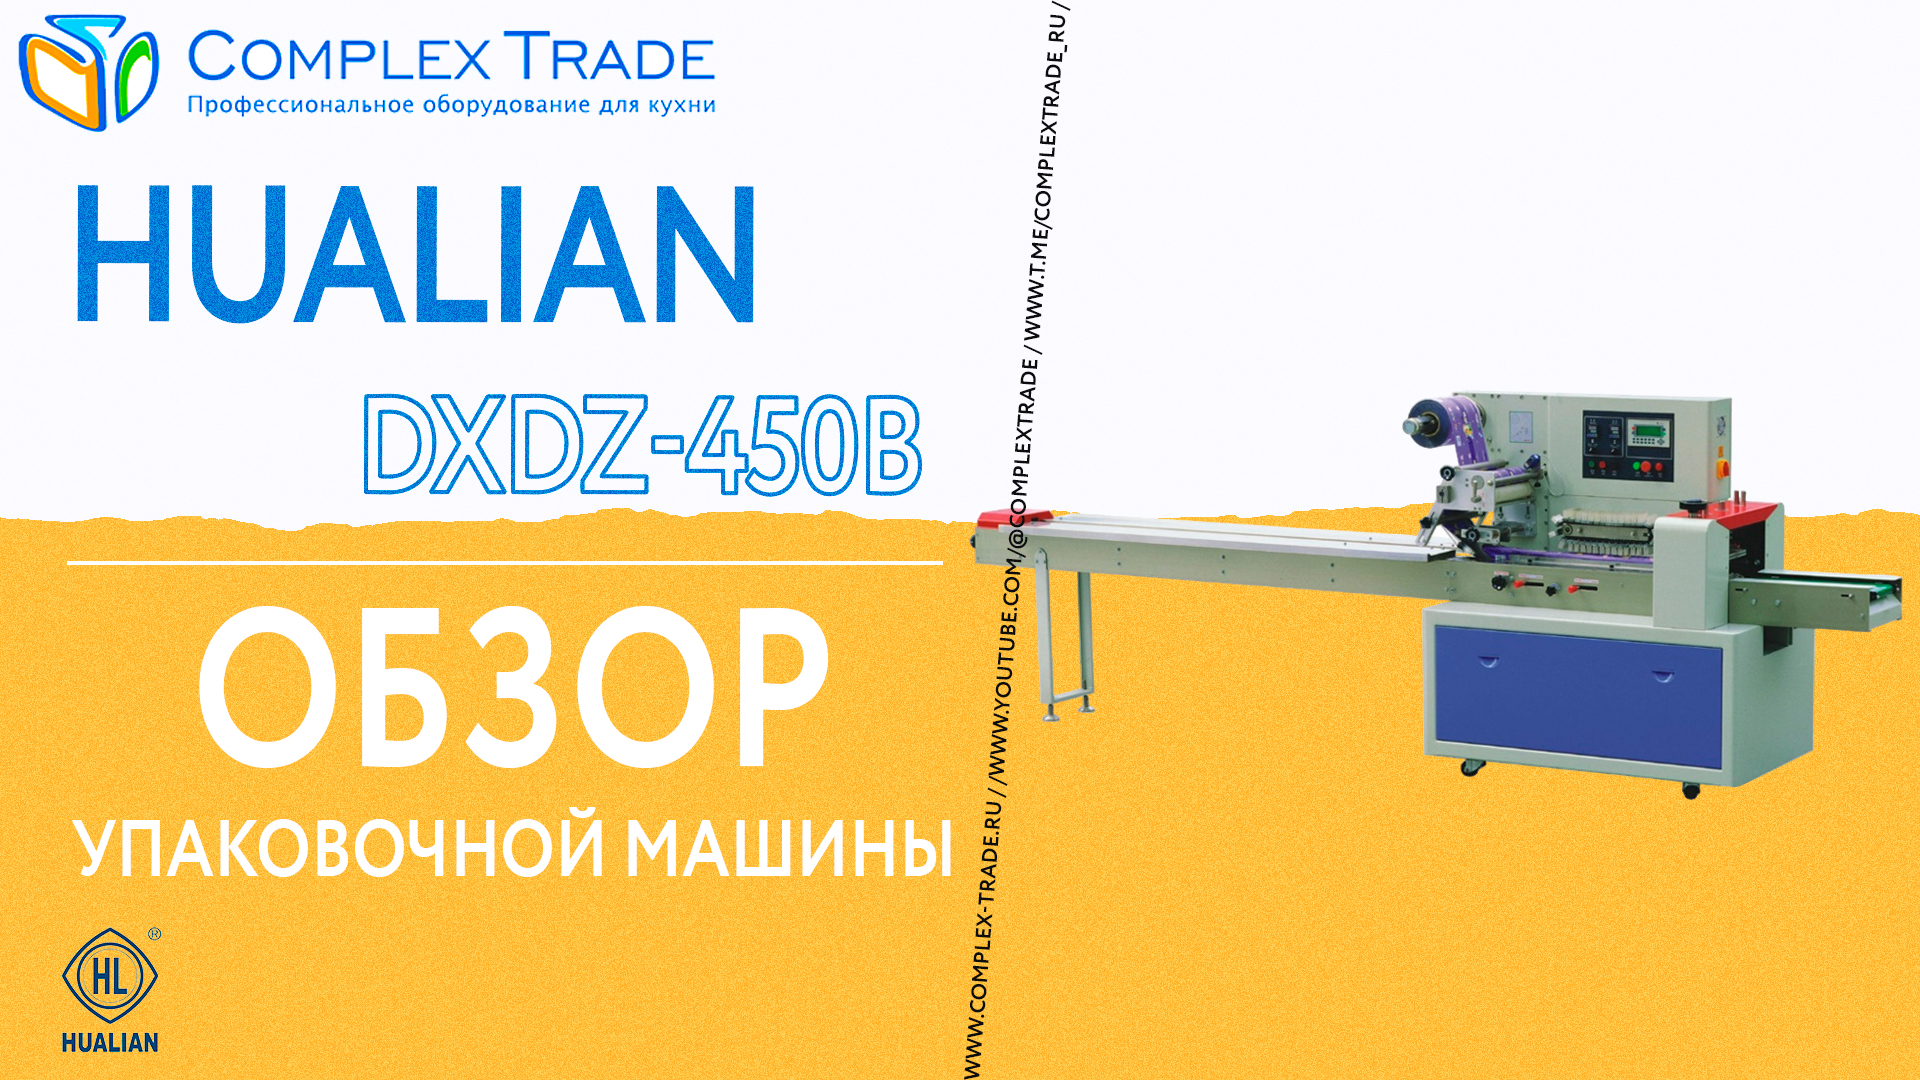 Hualian DXDZ-450B - Обзор упаковочной машины